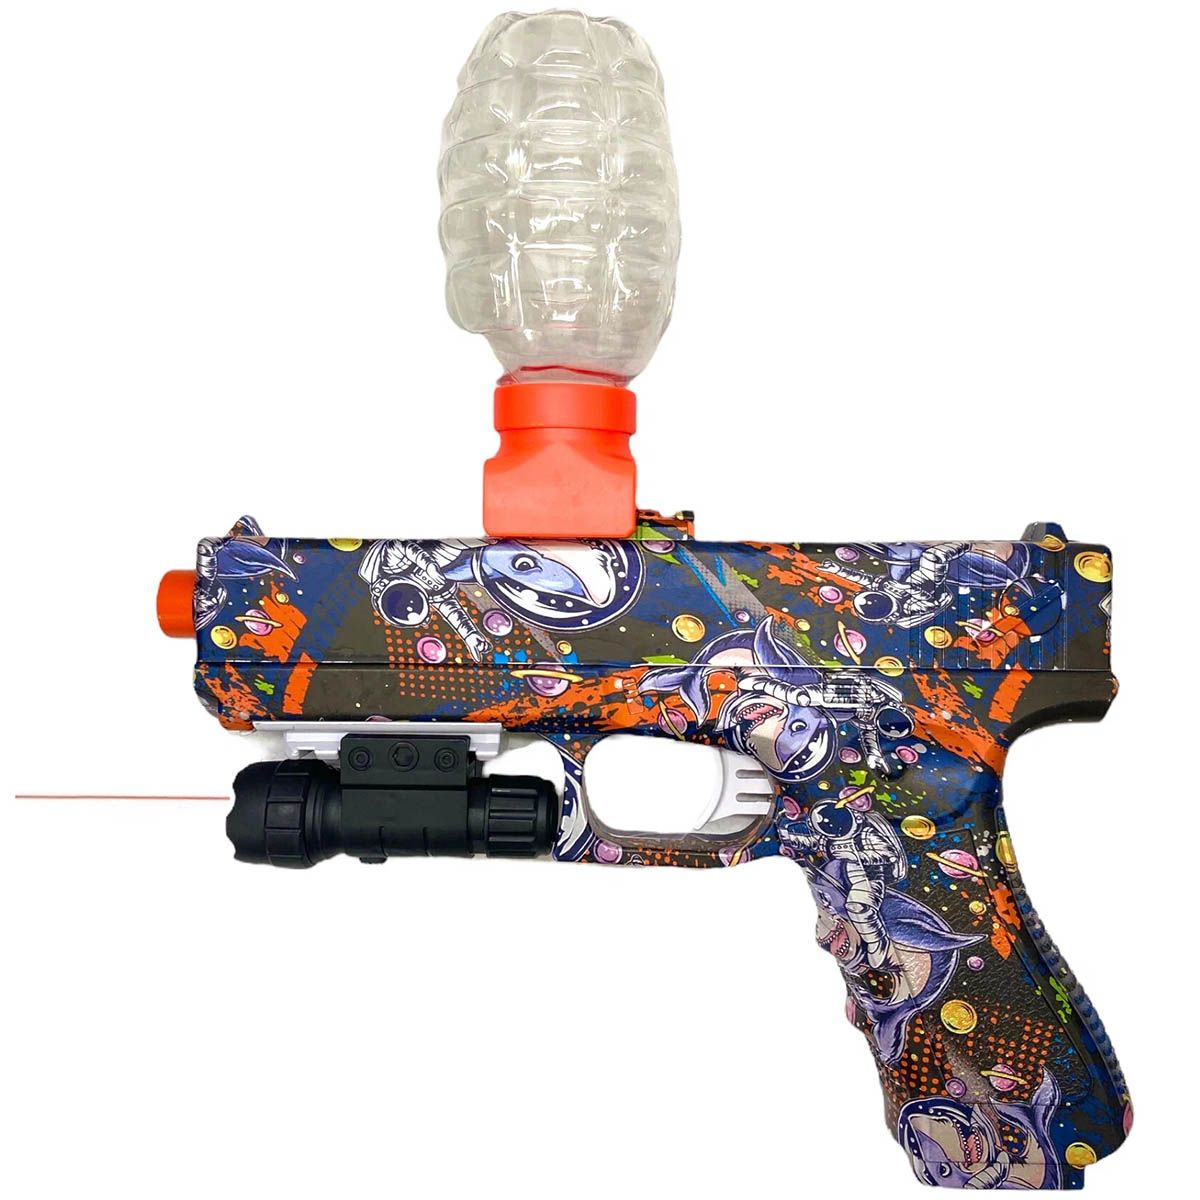 Электрический пистолет - игрушка Water Bomb Gun, орбизы, лазерный прицел, рисунок граффити